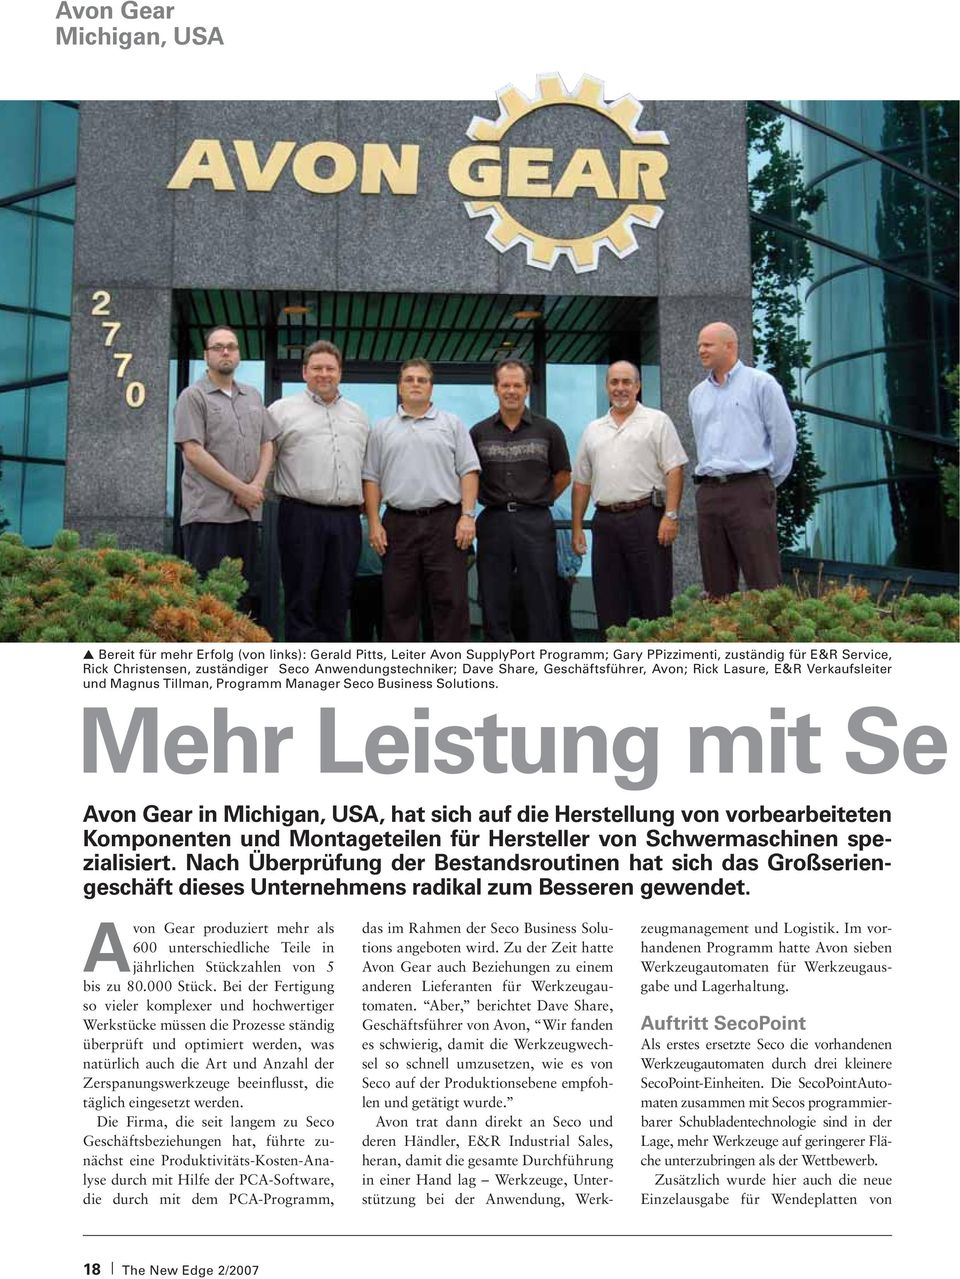 Mehr Leistung mit Se Avon Gear in Michigan, USA, hat sich auf die Herstellung von vorbearbeiteten Komponenten und Montageteilen für Hersteller von Schwermaschinen spezialisiert.